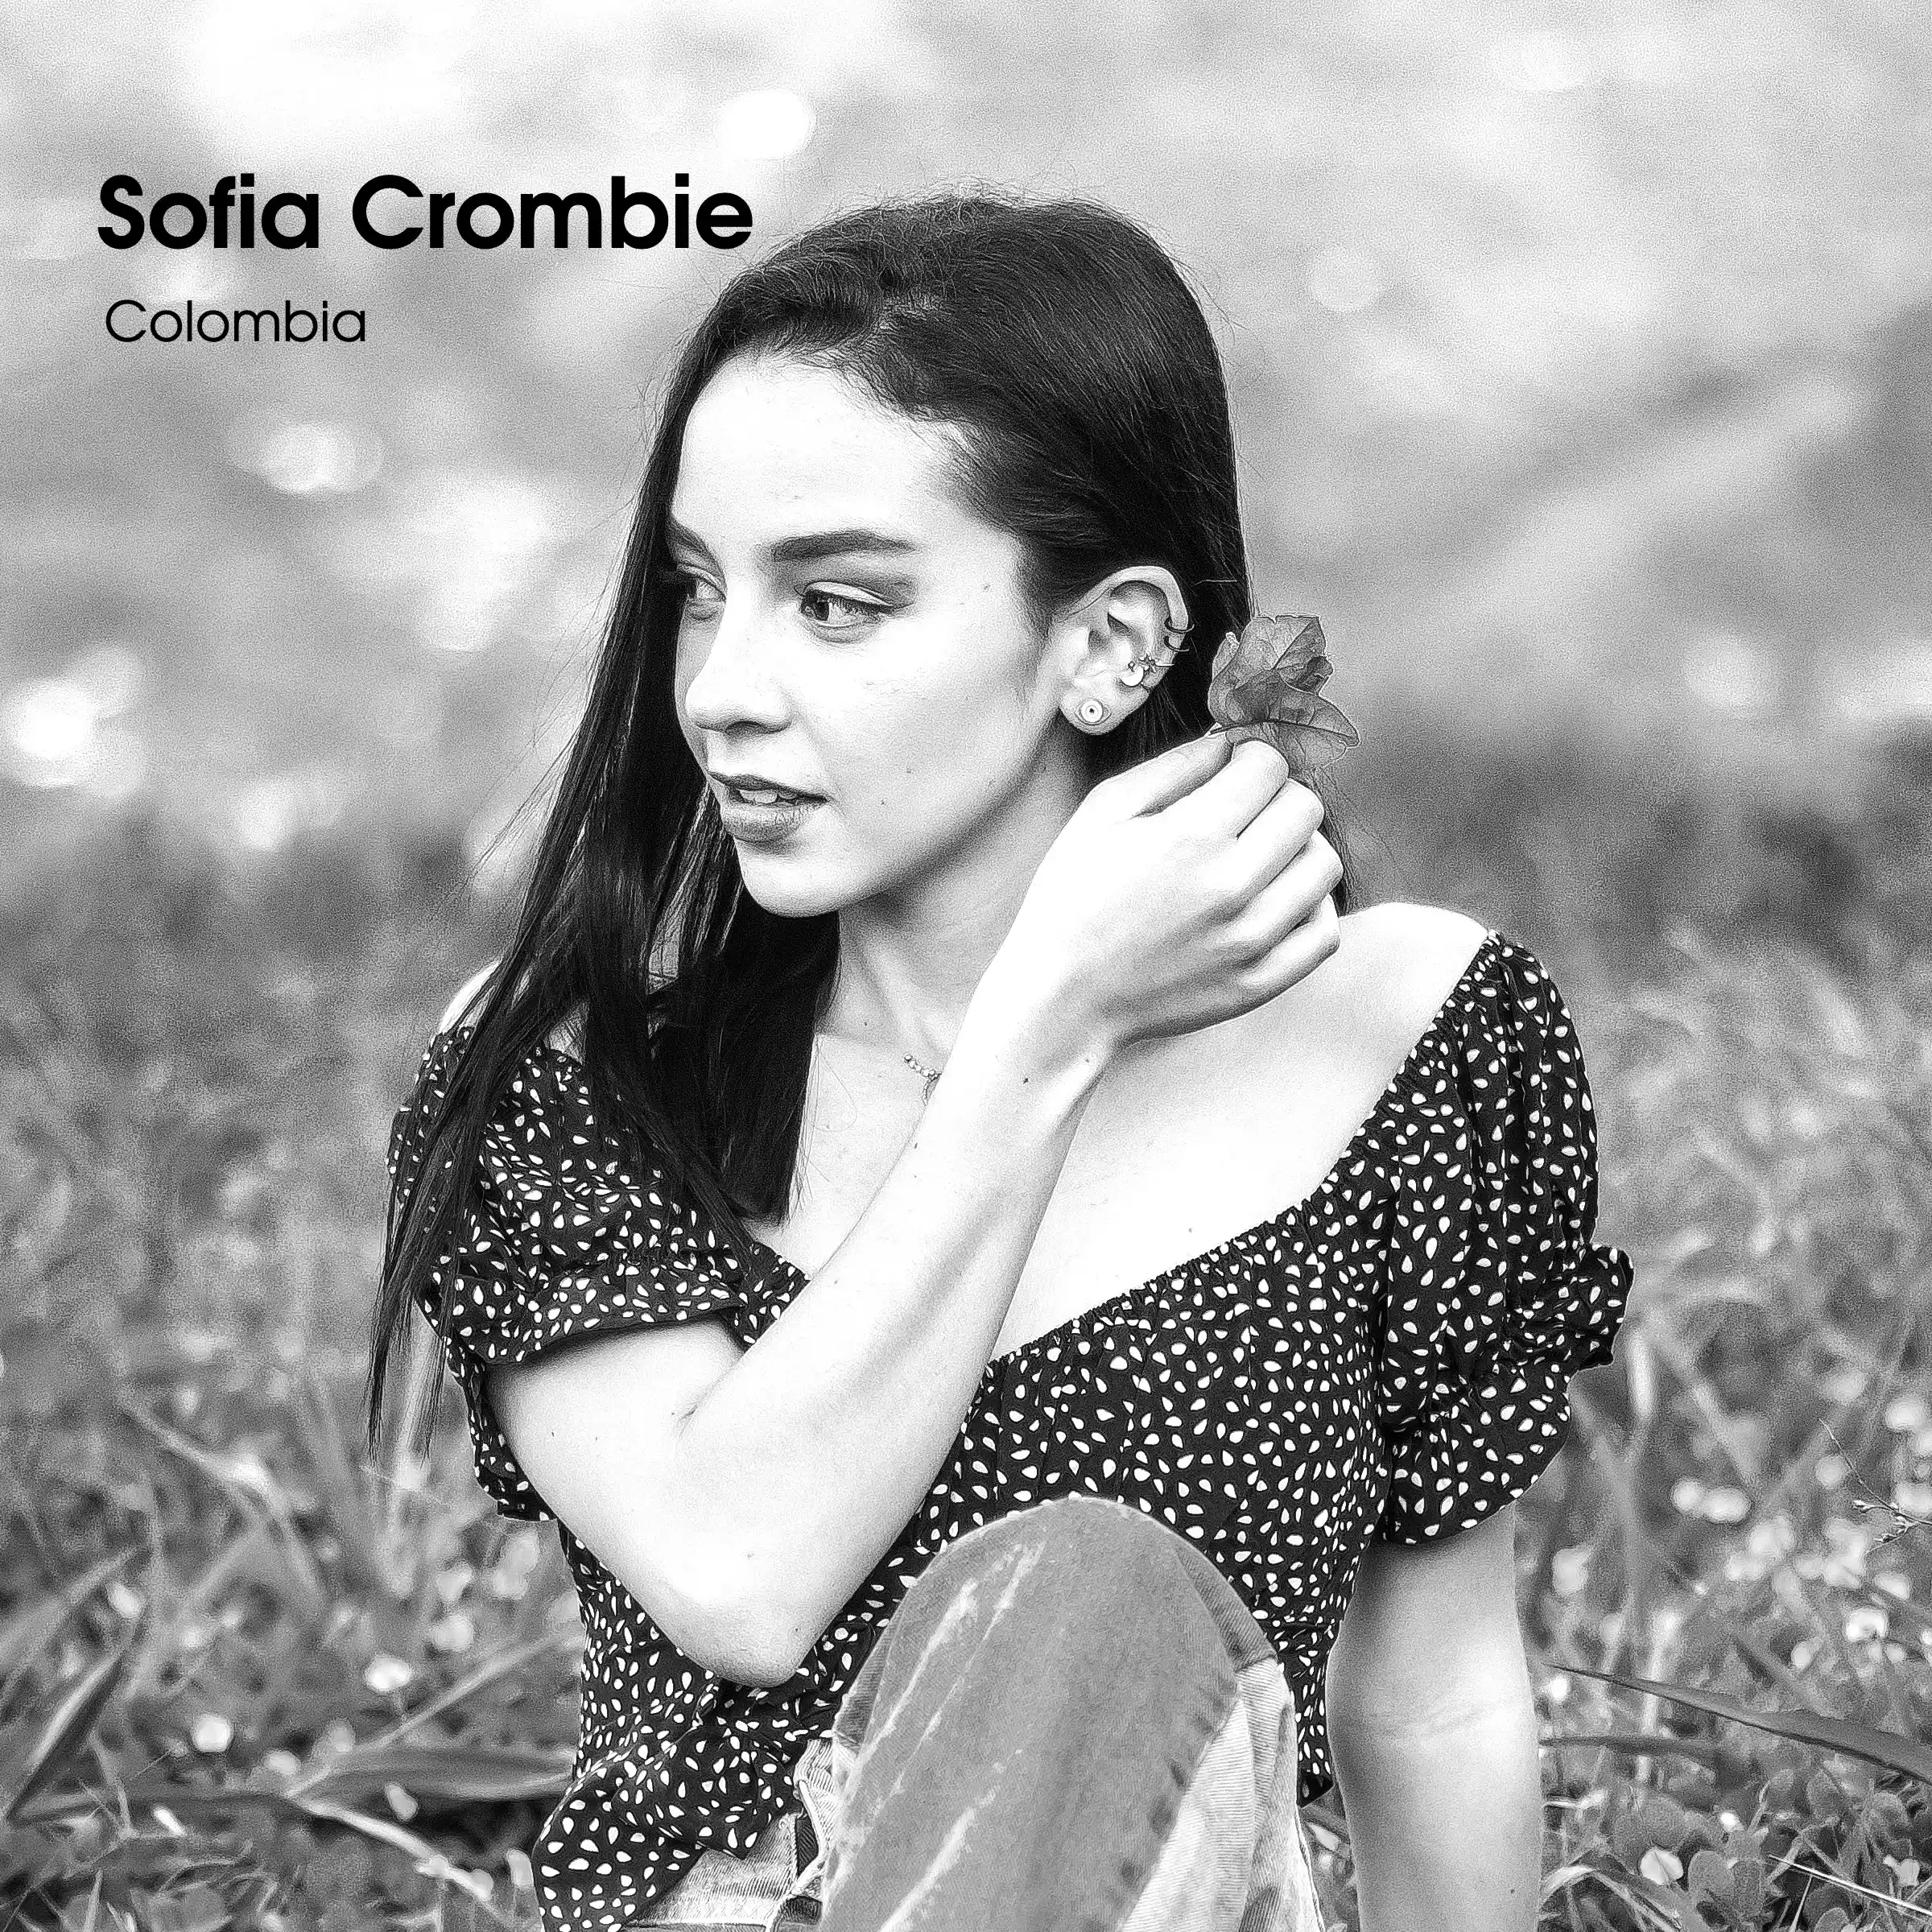 Sofia Crombie